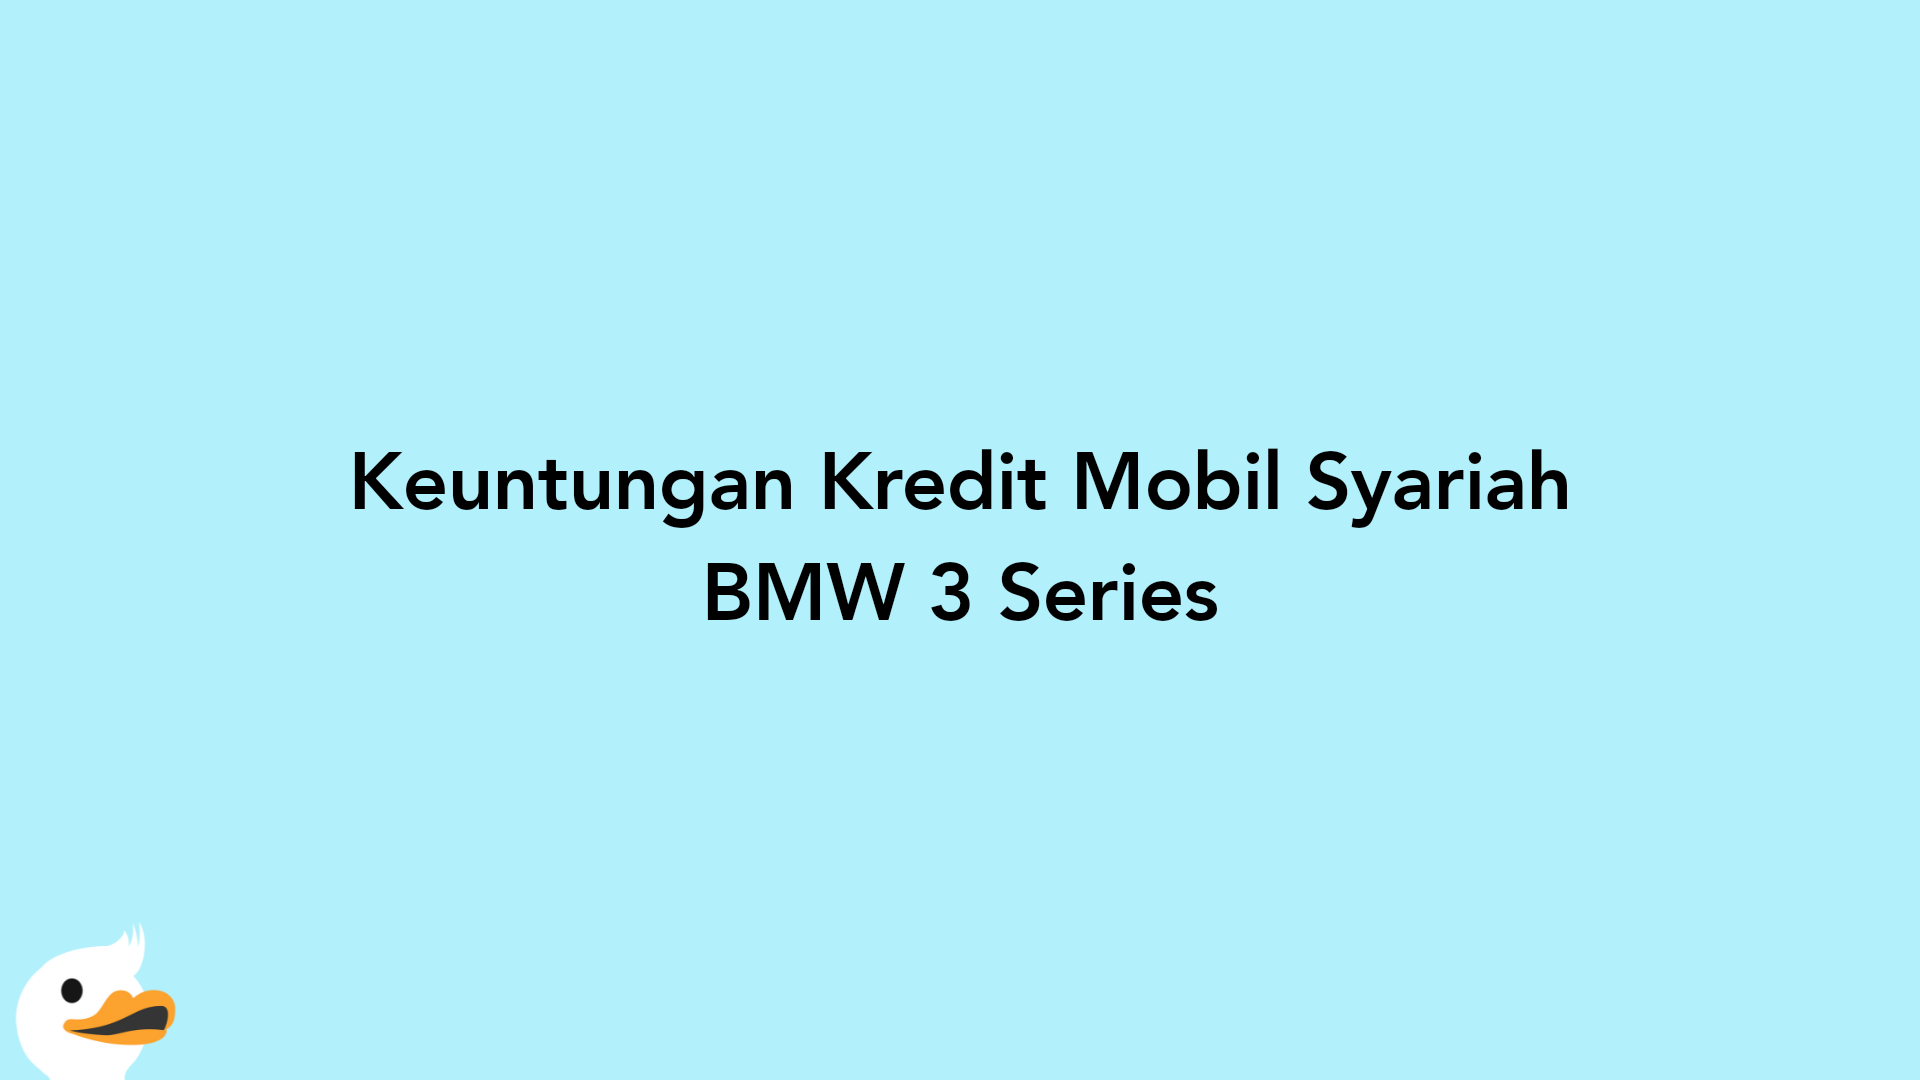 Keuntungan Kredit Mobil Syariah BMW 3 Series